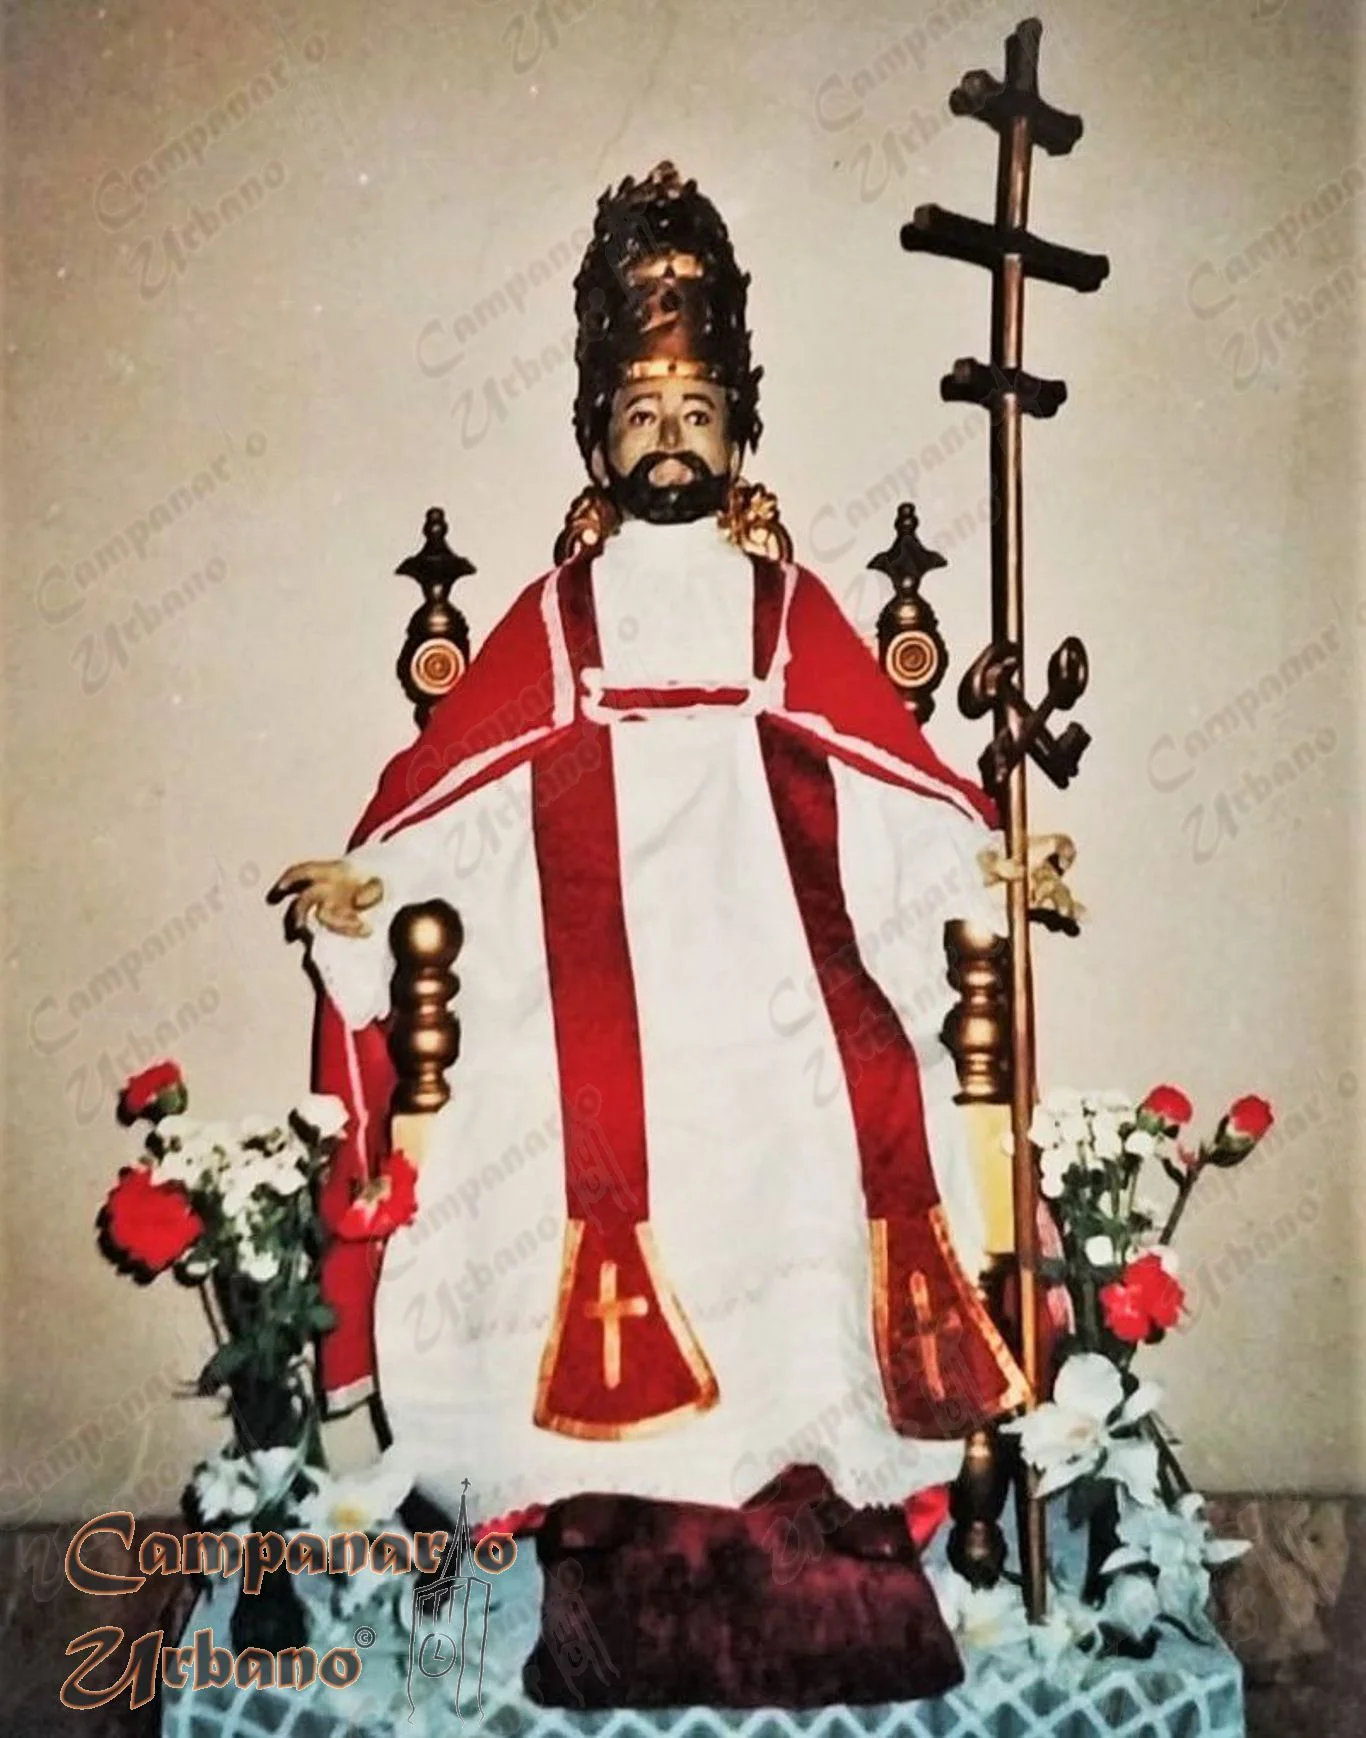 Imagen de San Pedro Apóstol, Catedral de Nuestra Señora de Copacabana de Guarenas.